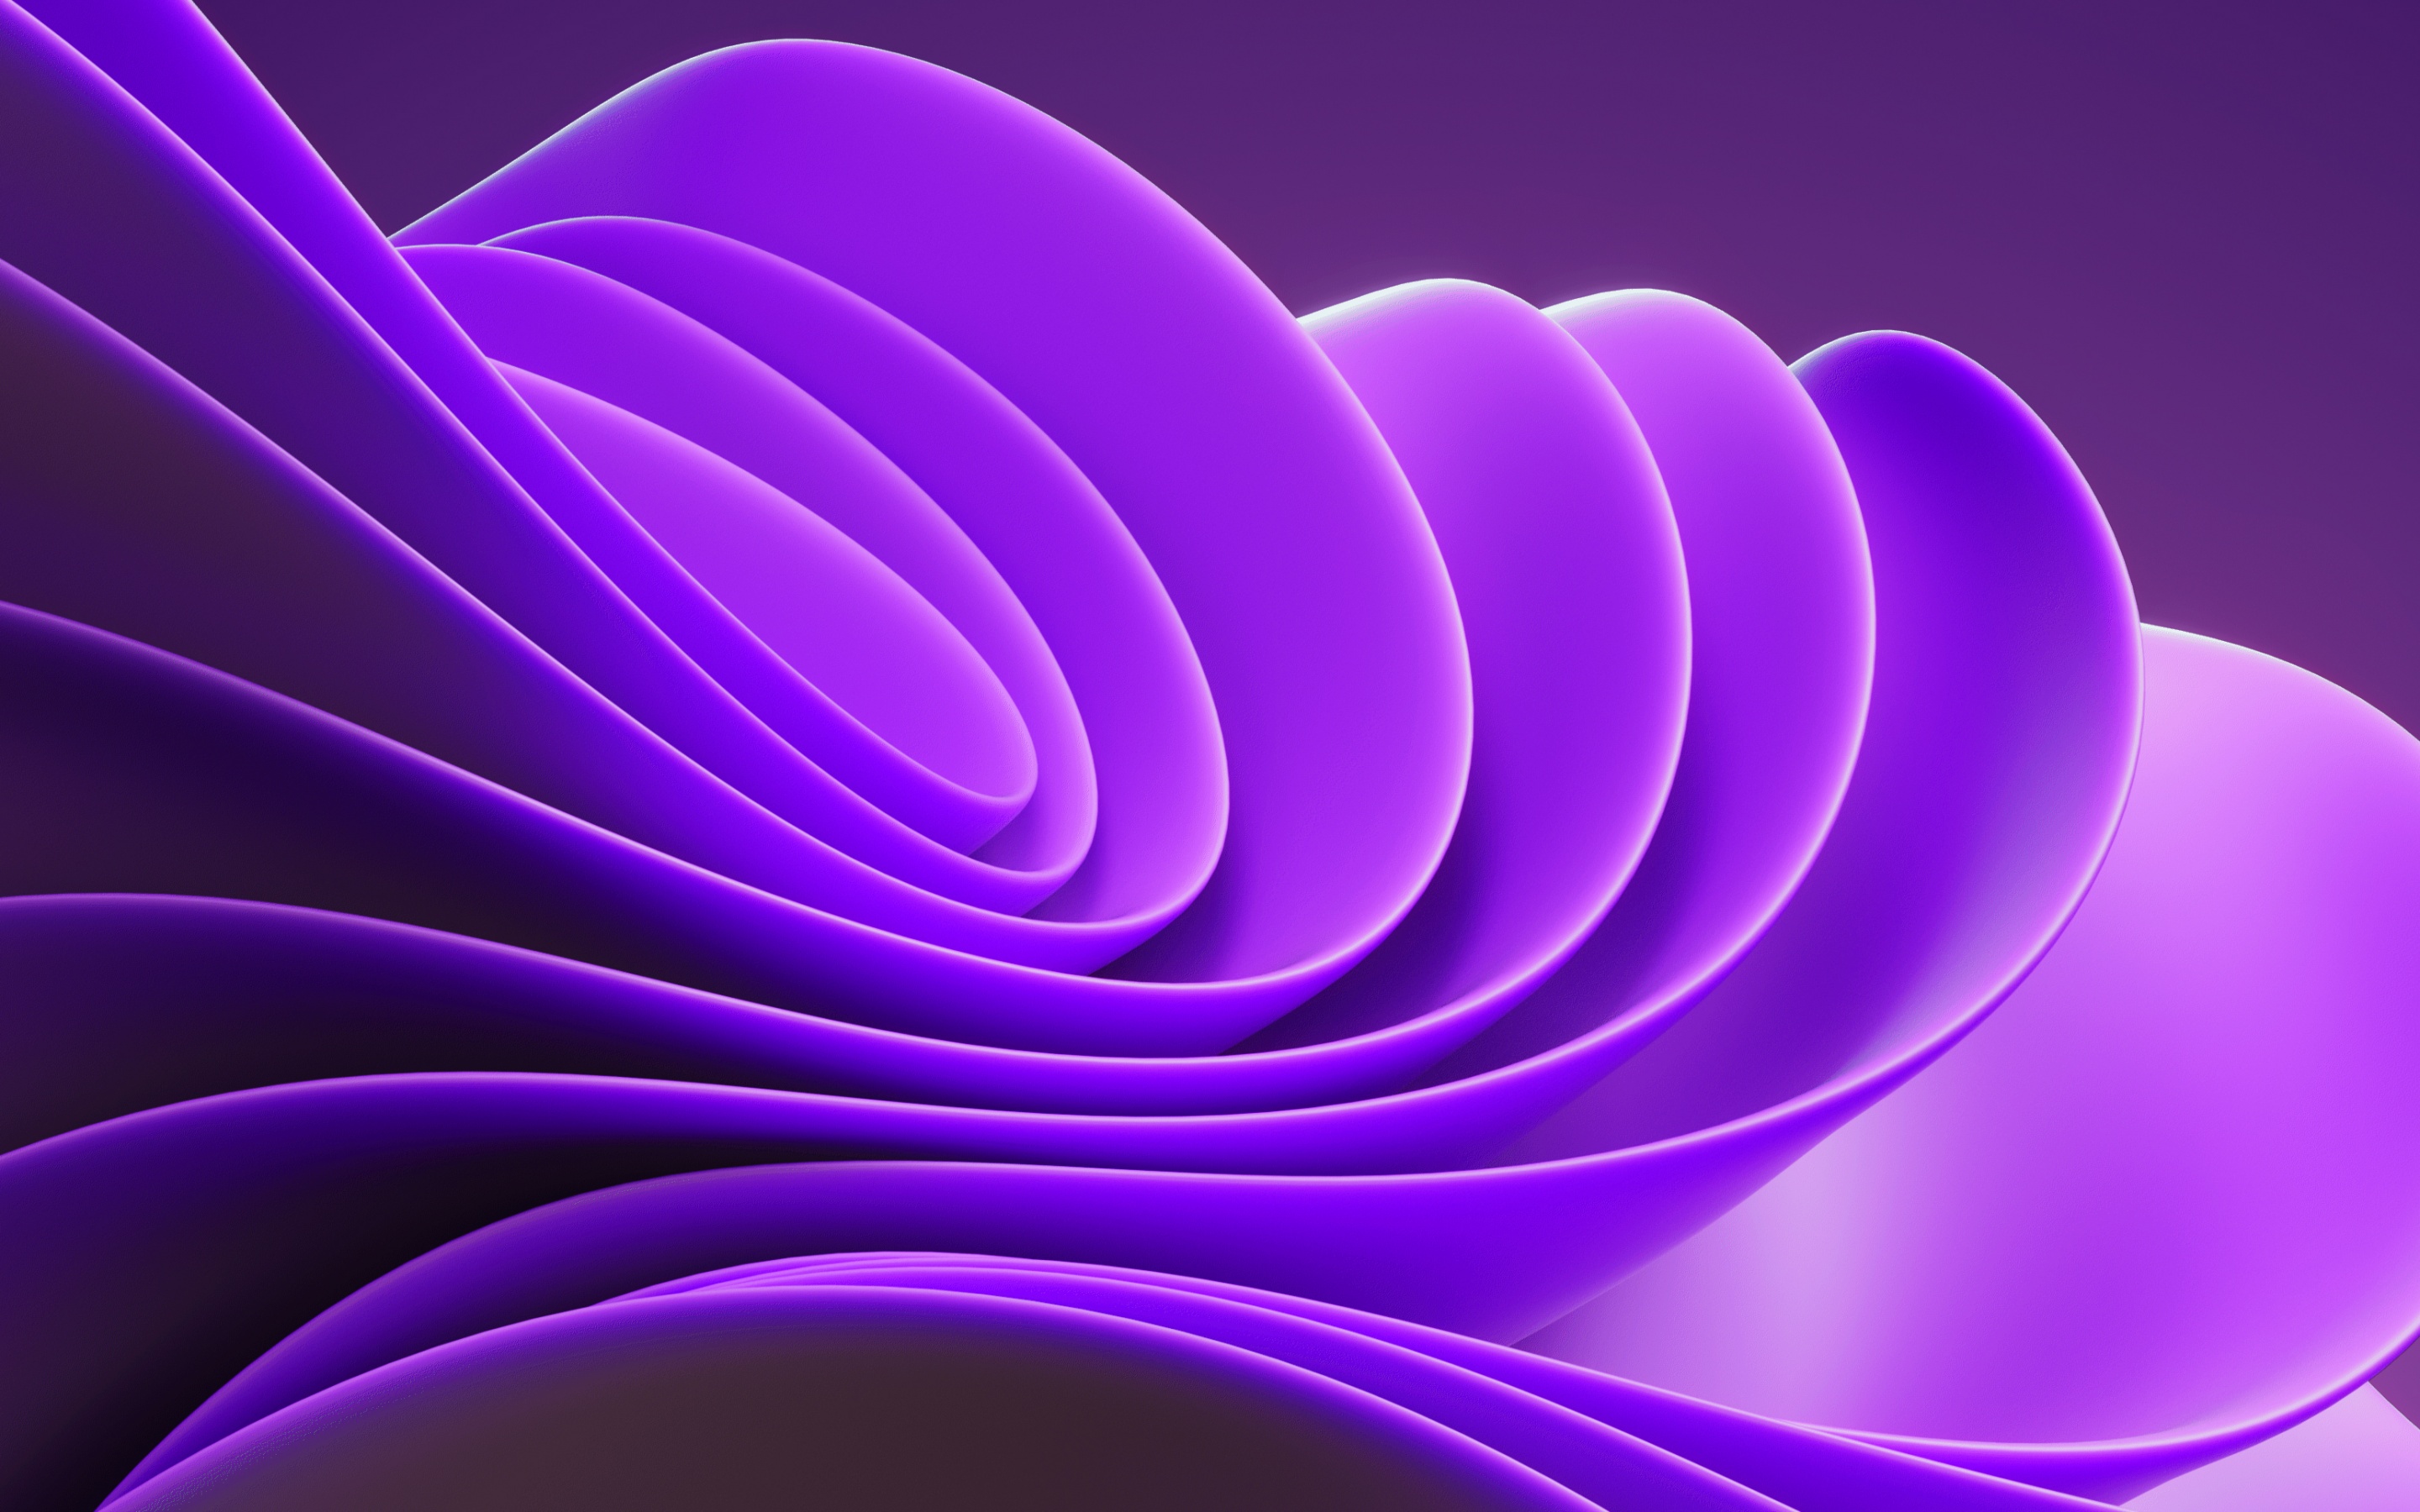 Hình nền 3D tím lila: Tạo nên một không gian chiến động đầy tính cách bằng cách sử dụng hình nền 3D tím lila. Khám phá một màu sắc đầy cá tính mang đến điều mới mẻ và hấp dẫn cho giao diện của bạn.